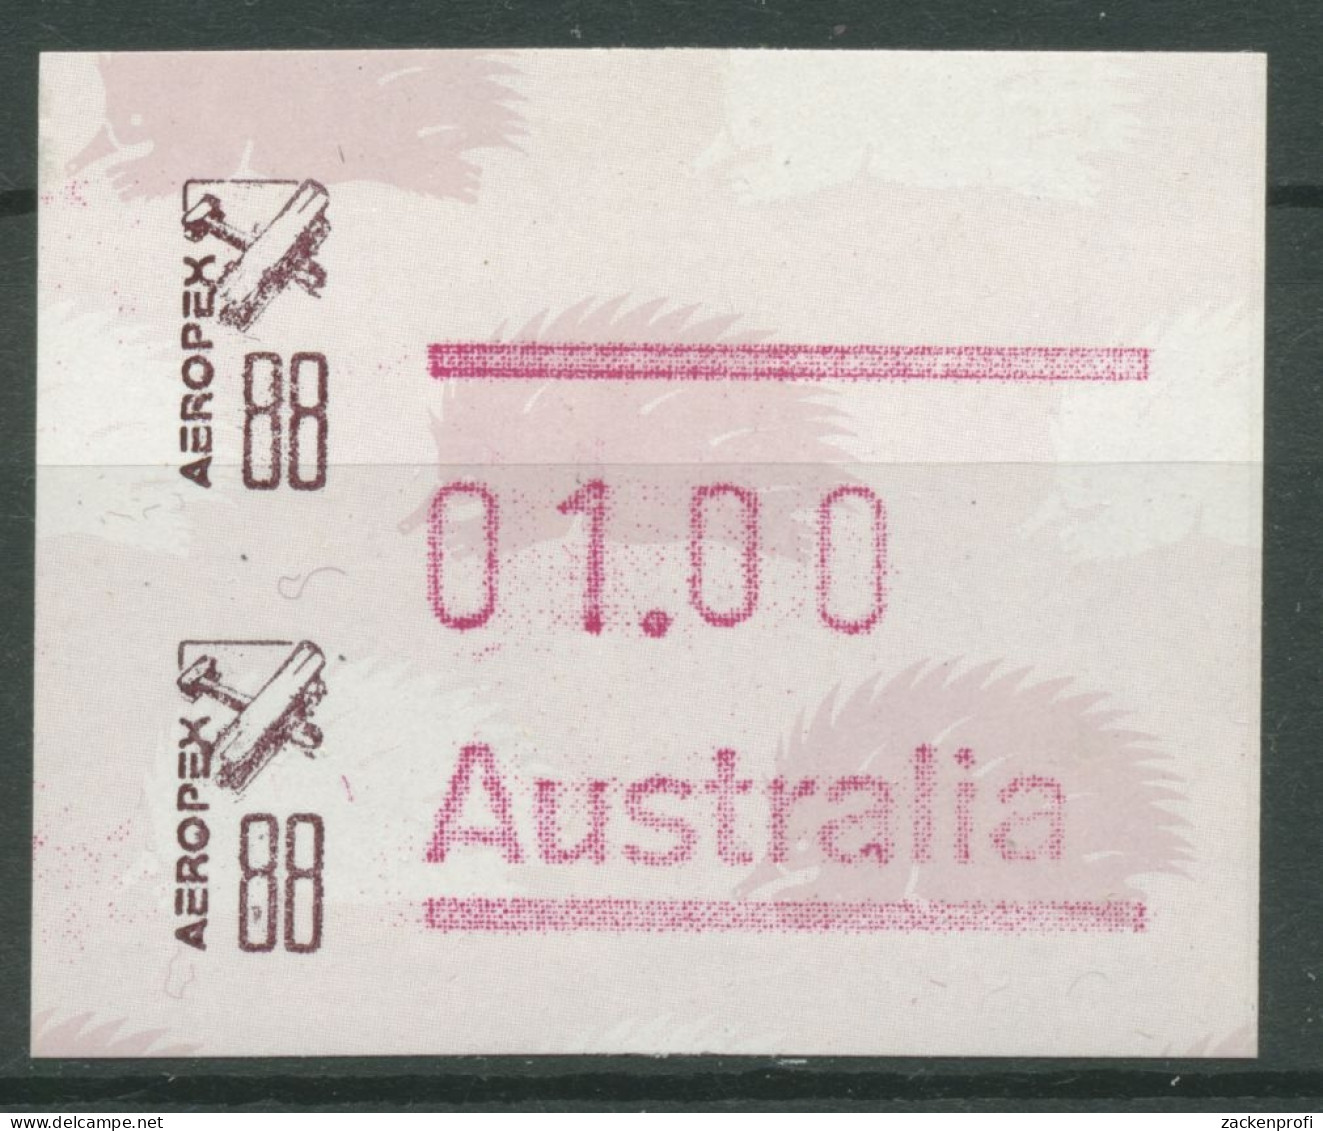 Australien 1988 AEROPEX '88 Adelaide Automatenmarke 10 Postfrisch - Machine Labels [ATM]